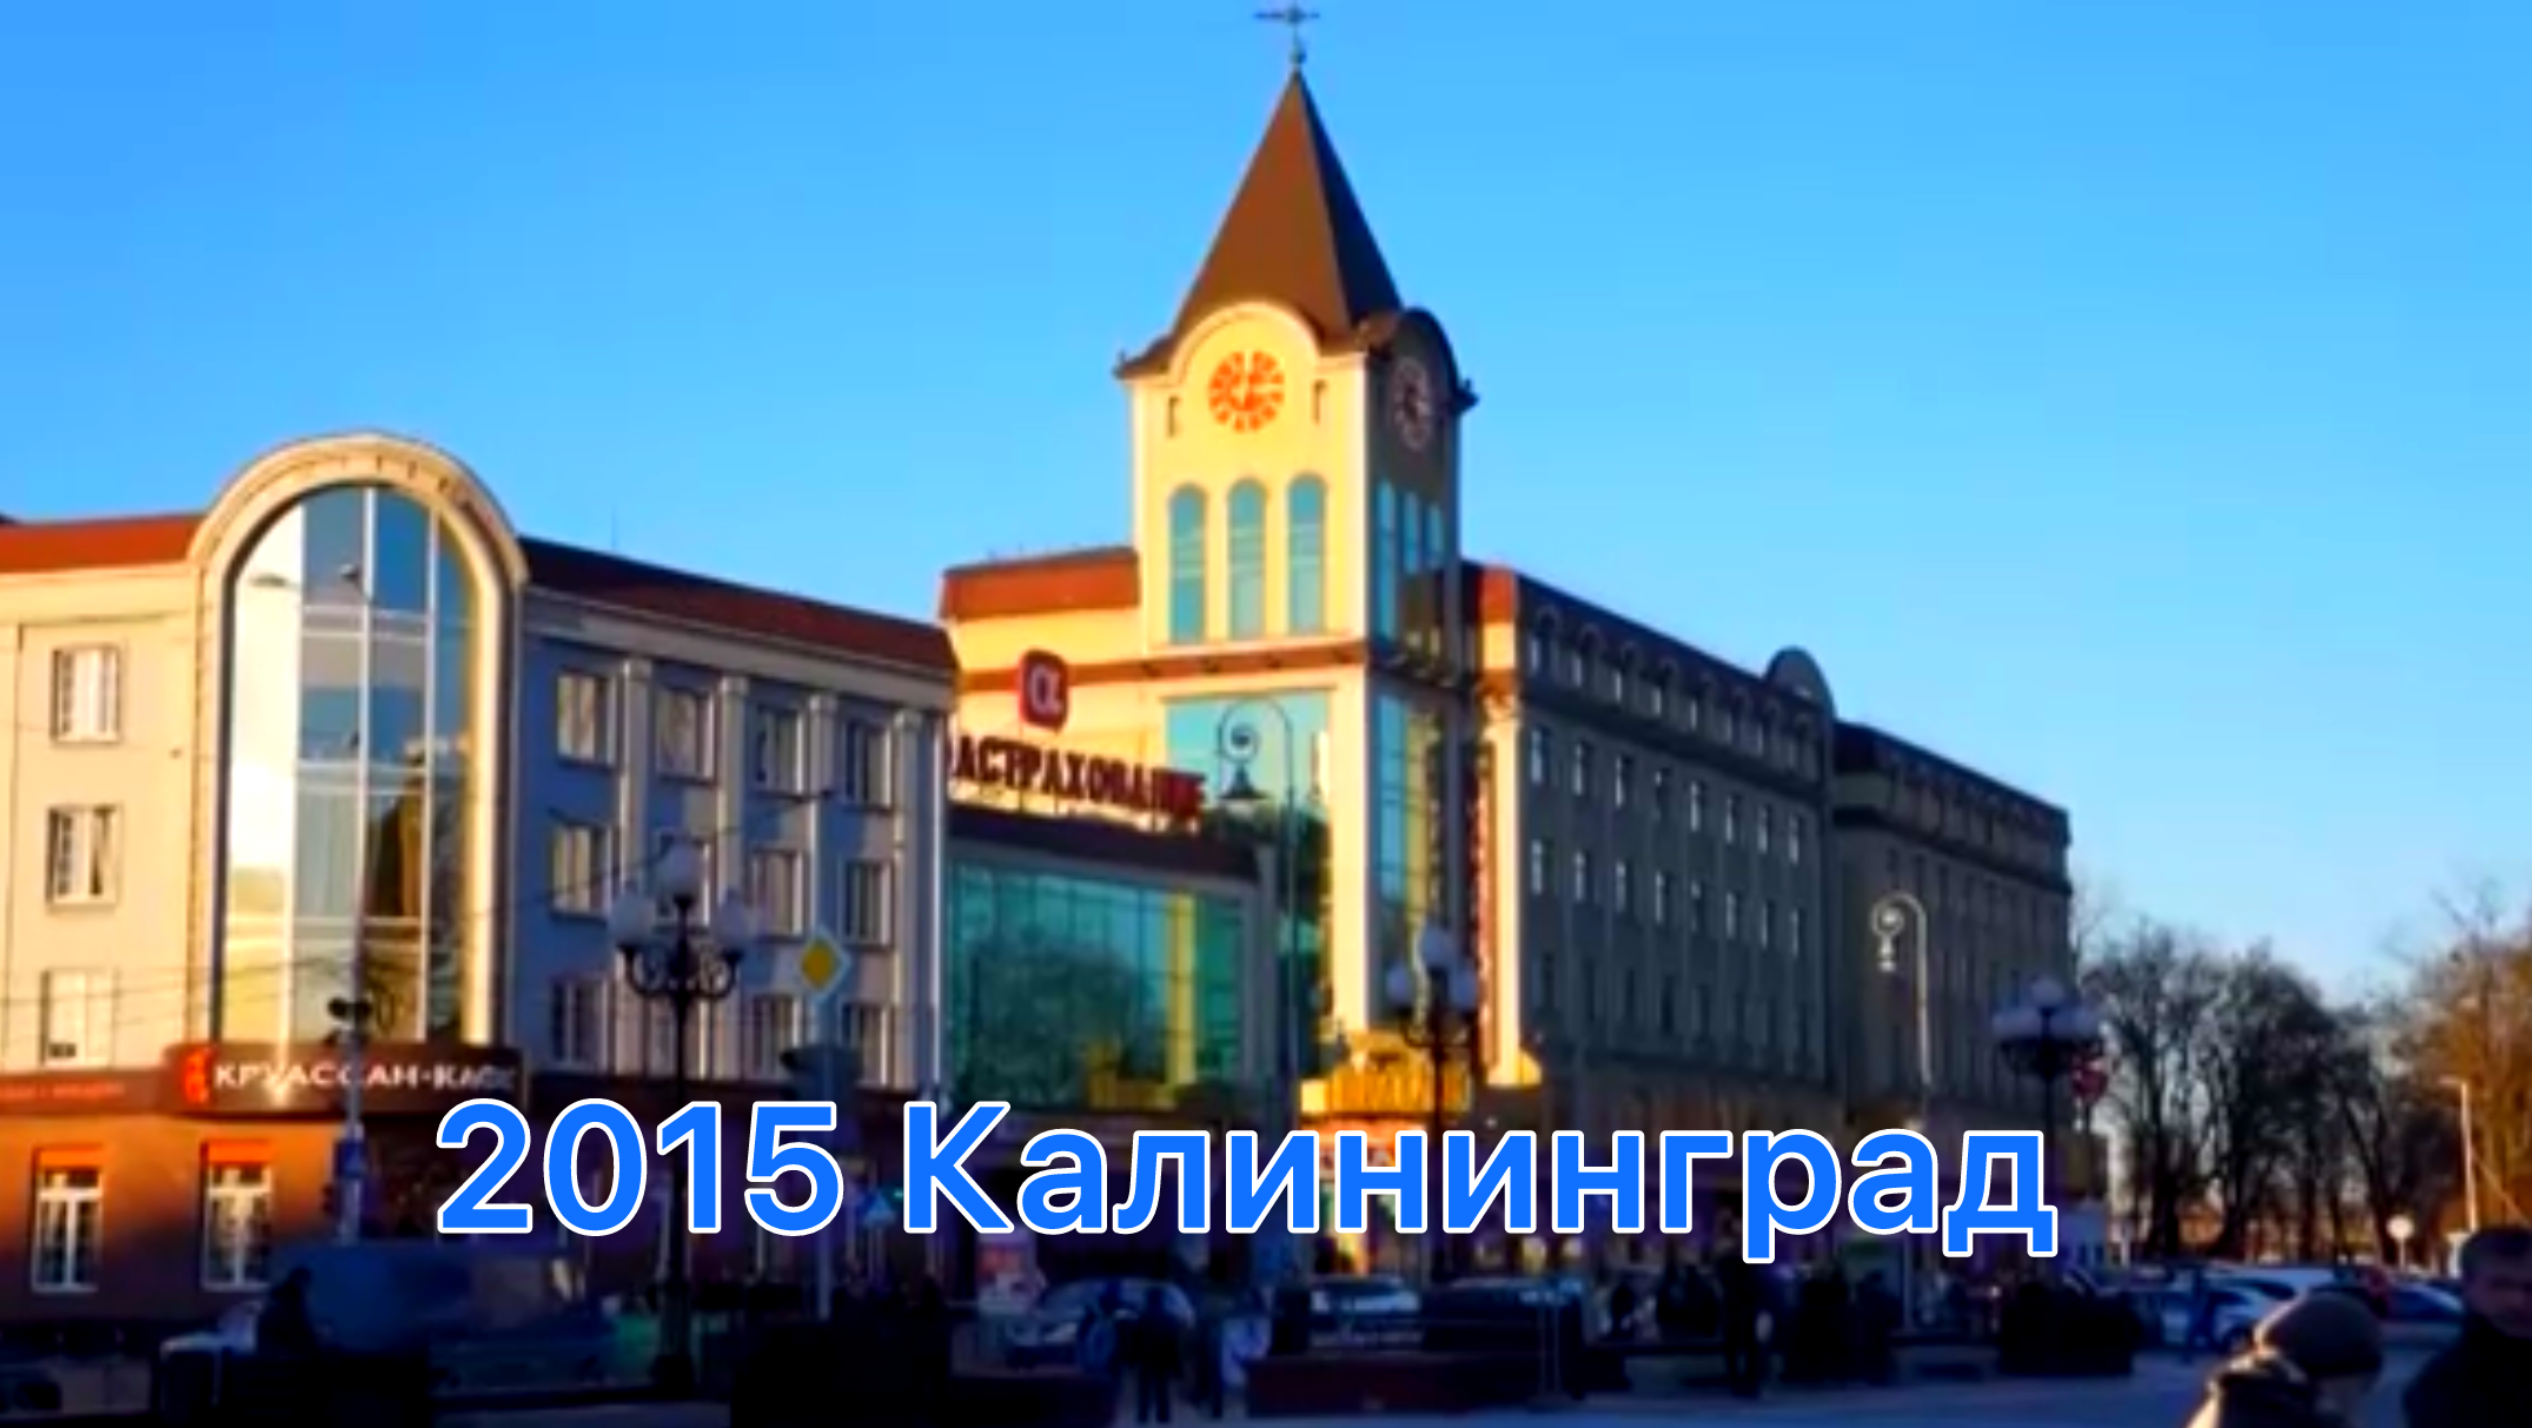 2015 Поездка в Калининград  1 ч. Музей янтаря,
Куршская коса
Встреча нового года в замке Нессельбек